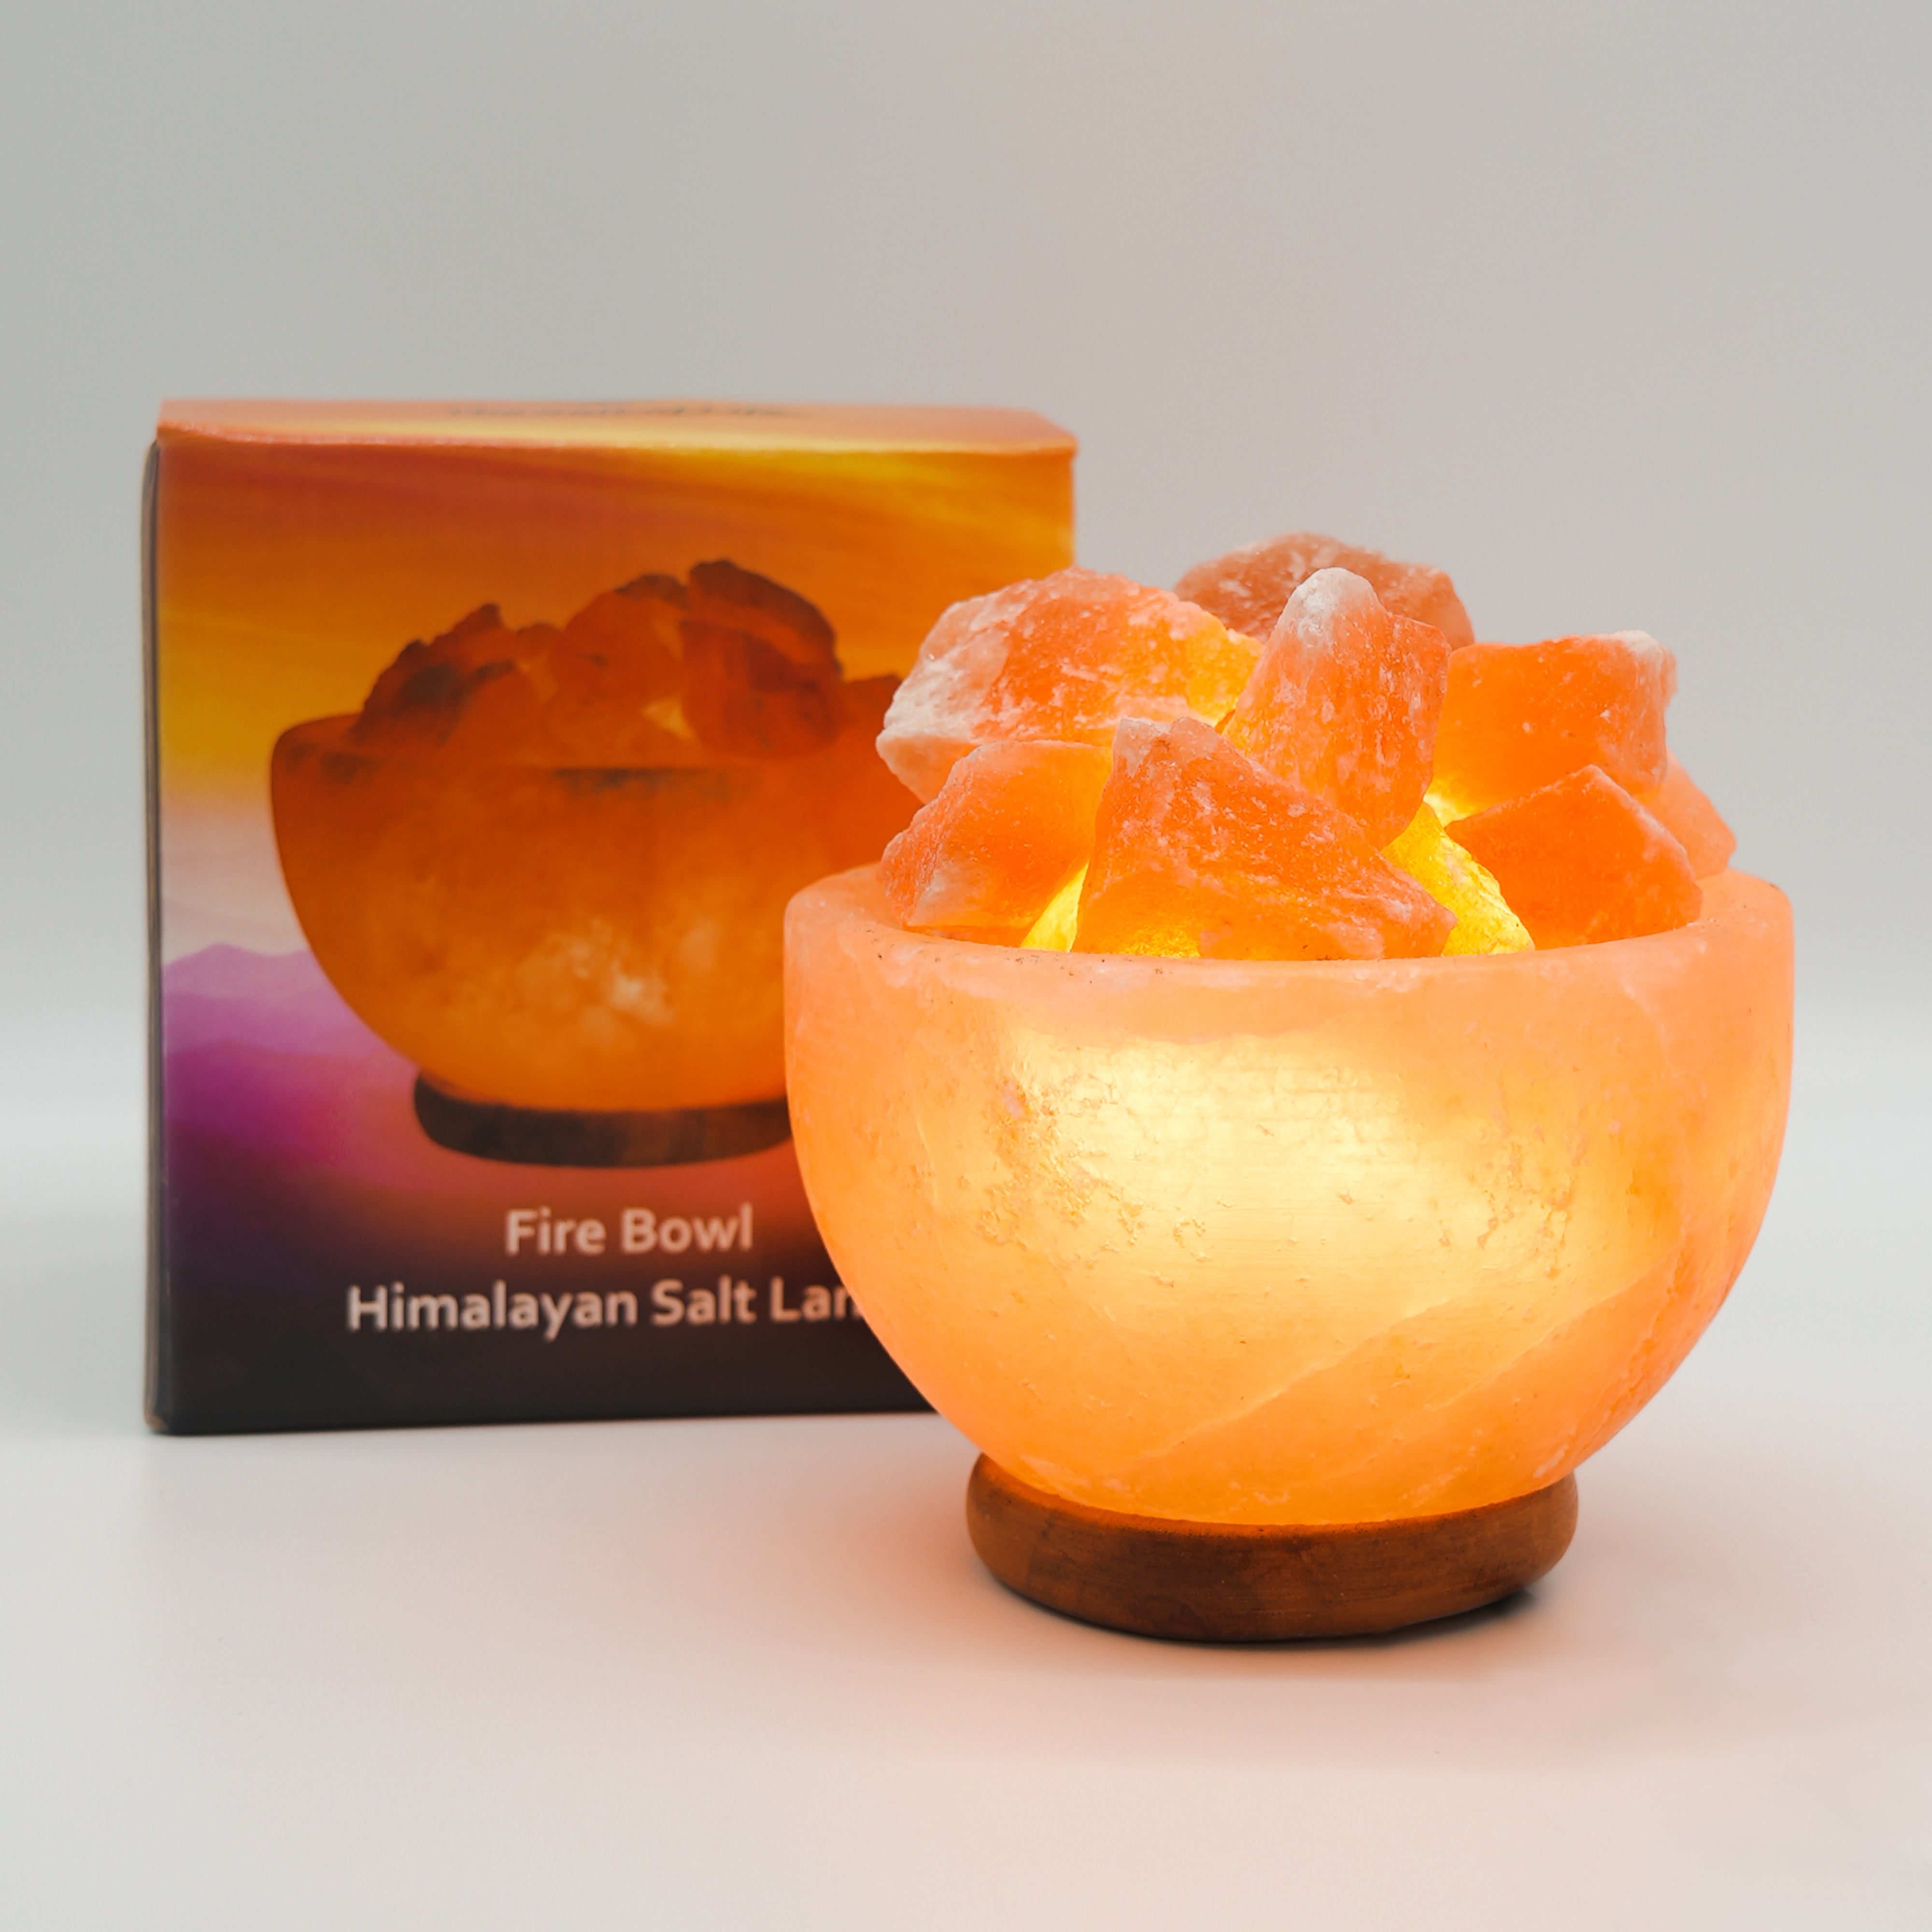 The Salt of Life - Himalayan Salt Lamp - Fire Bowl